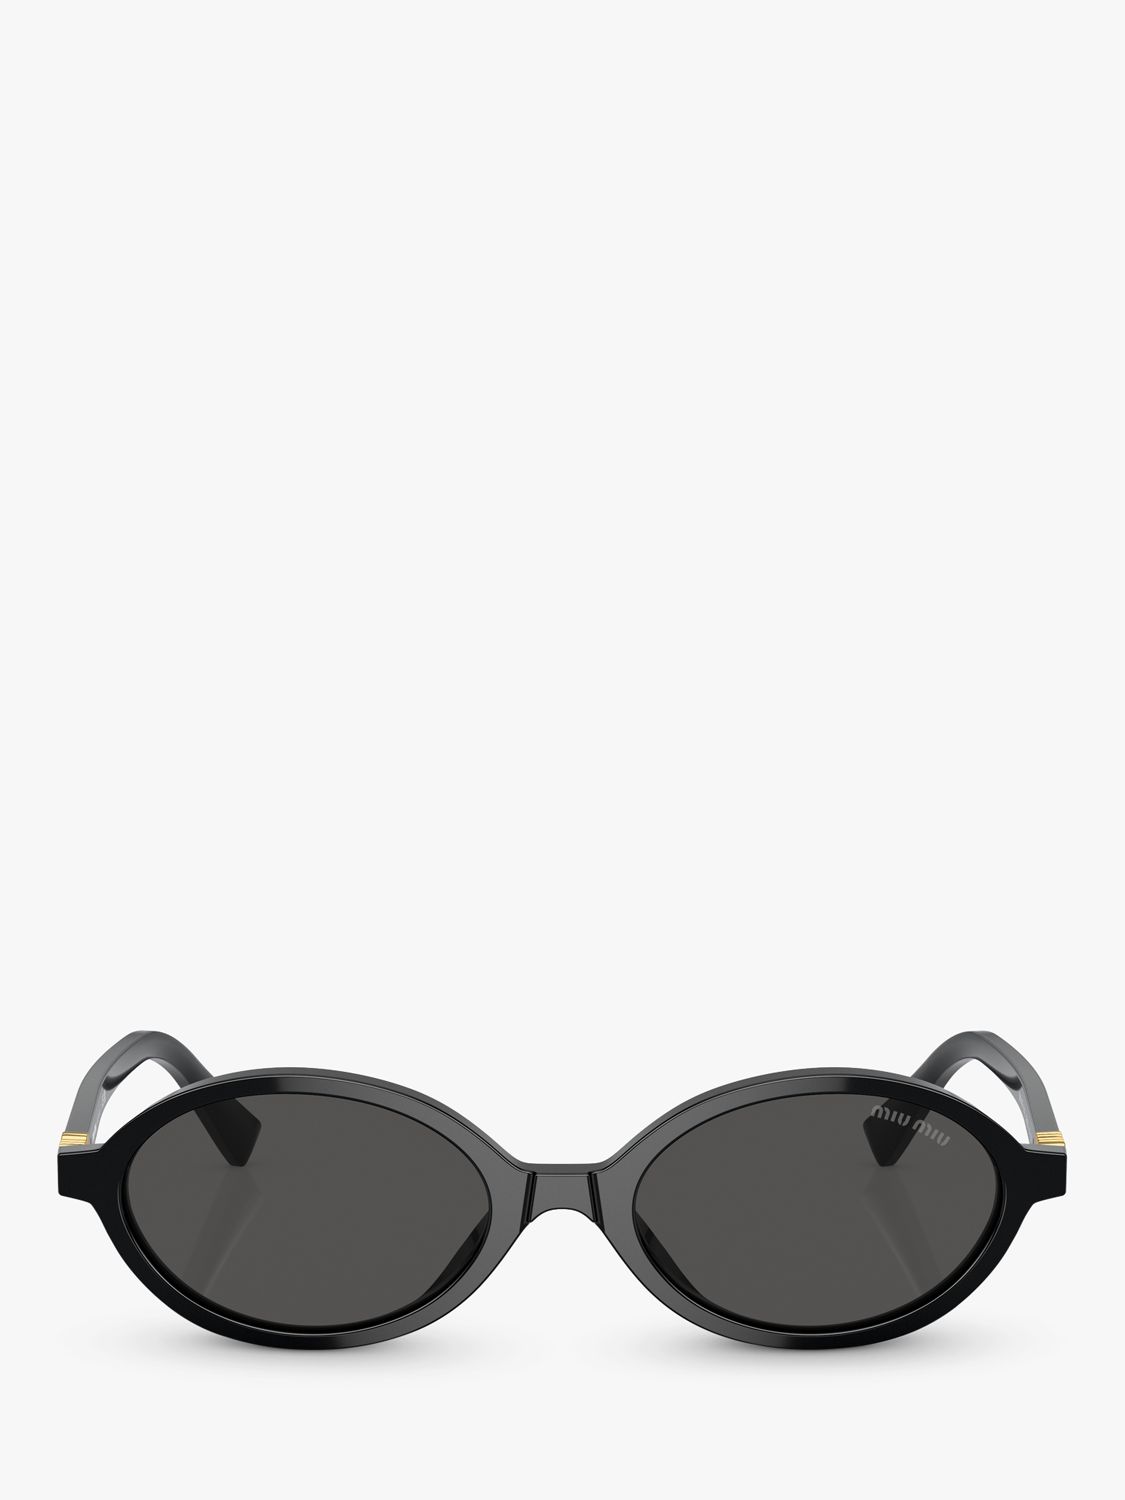 Miu Miu MU 04ZS Women's Oval Sunglasses, Black